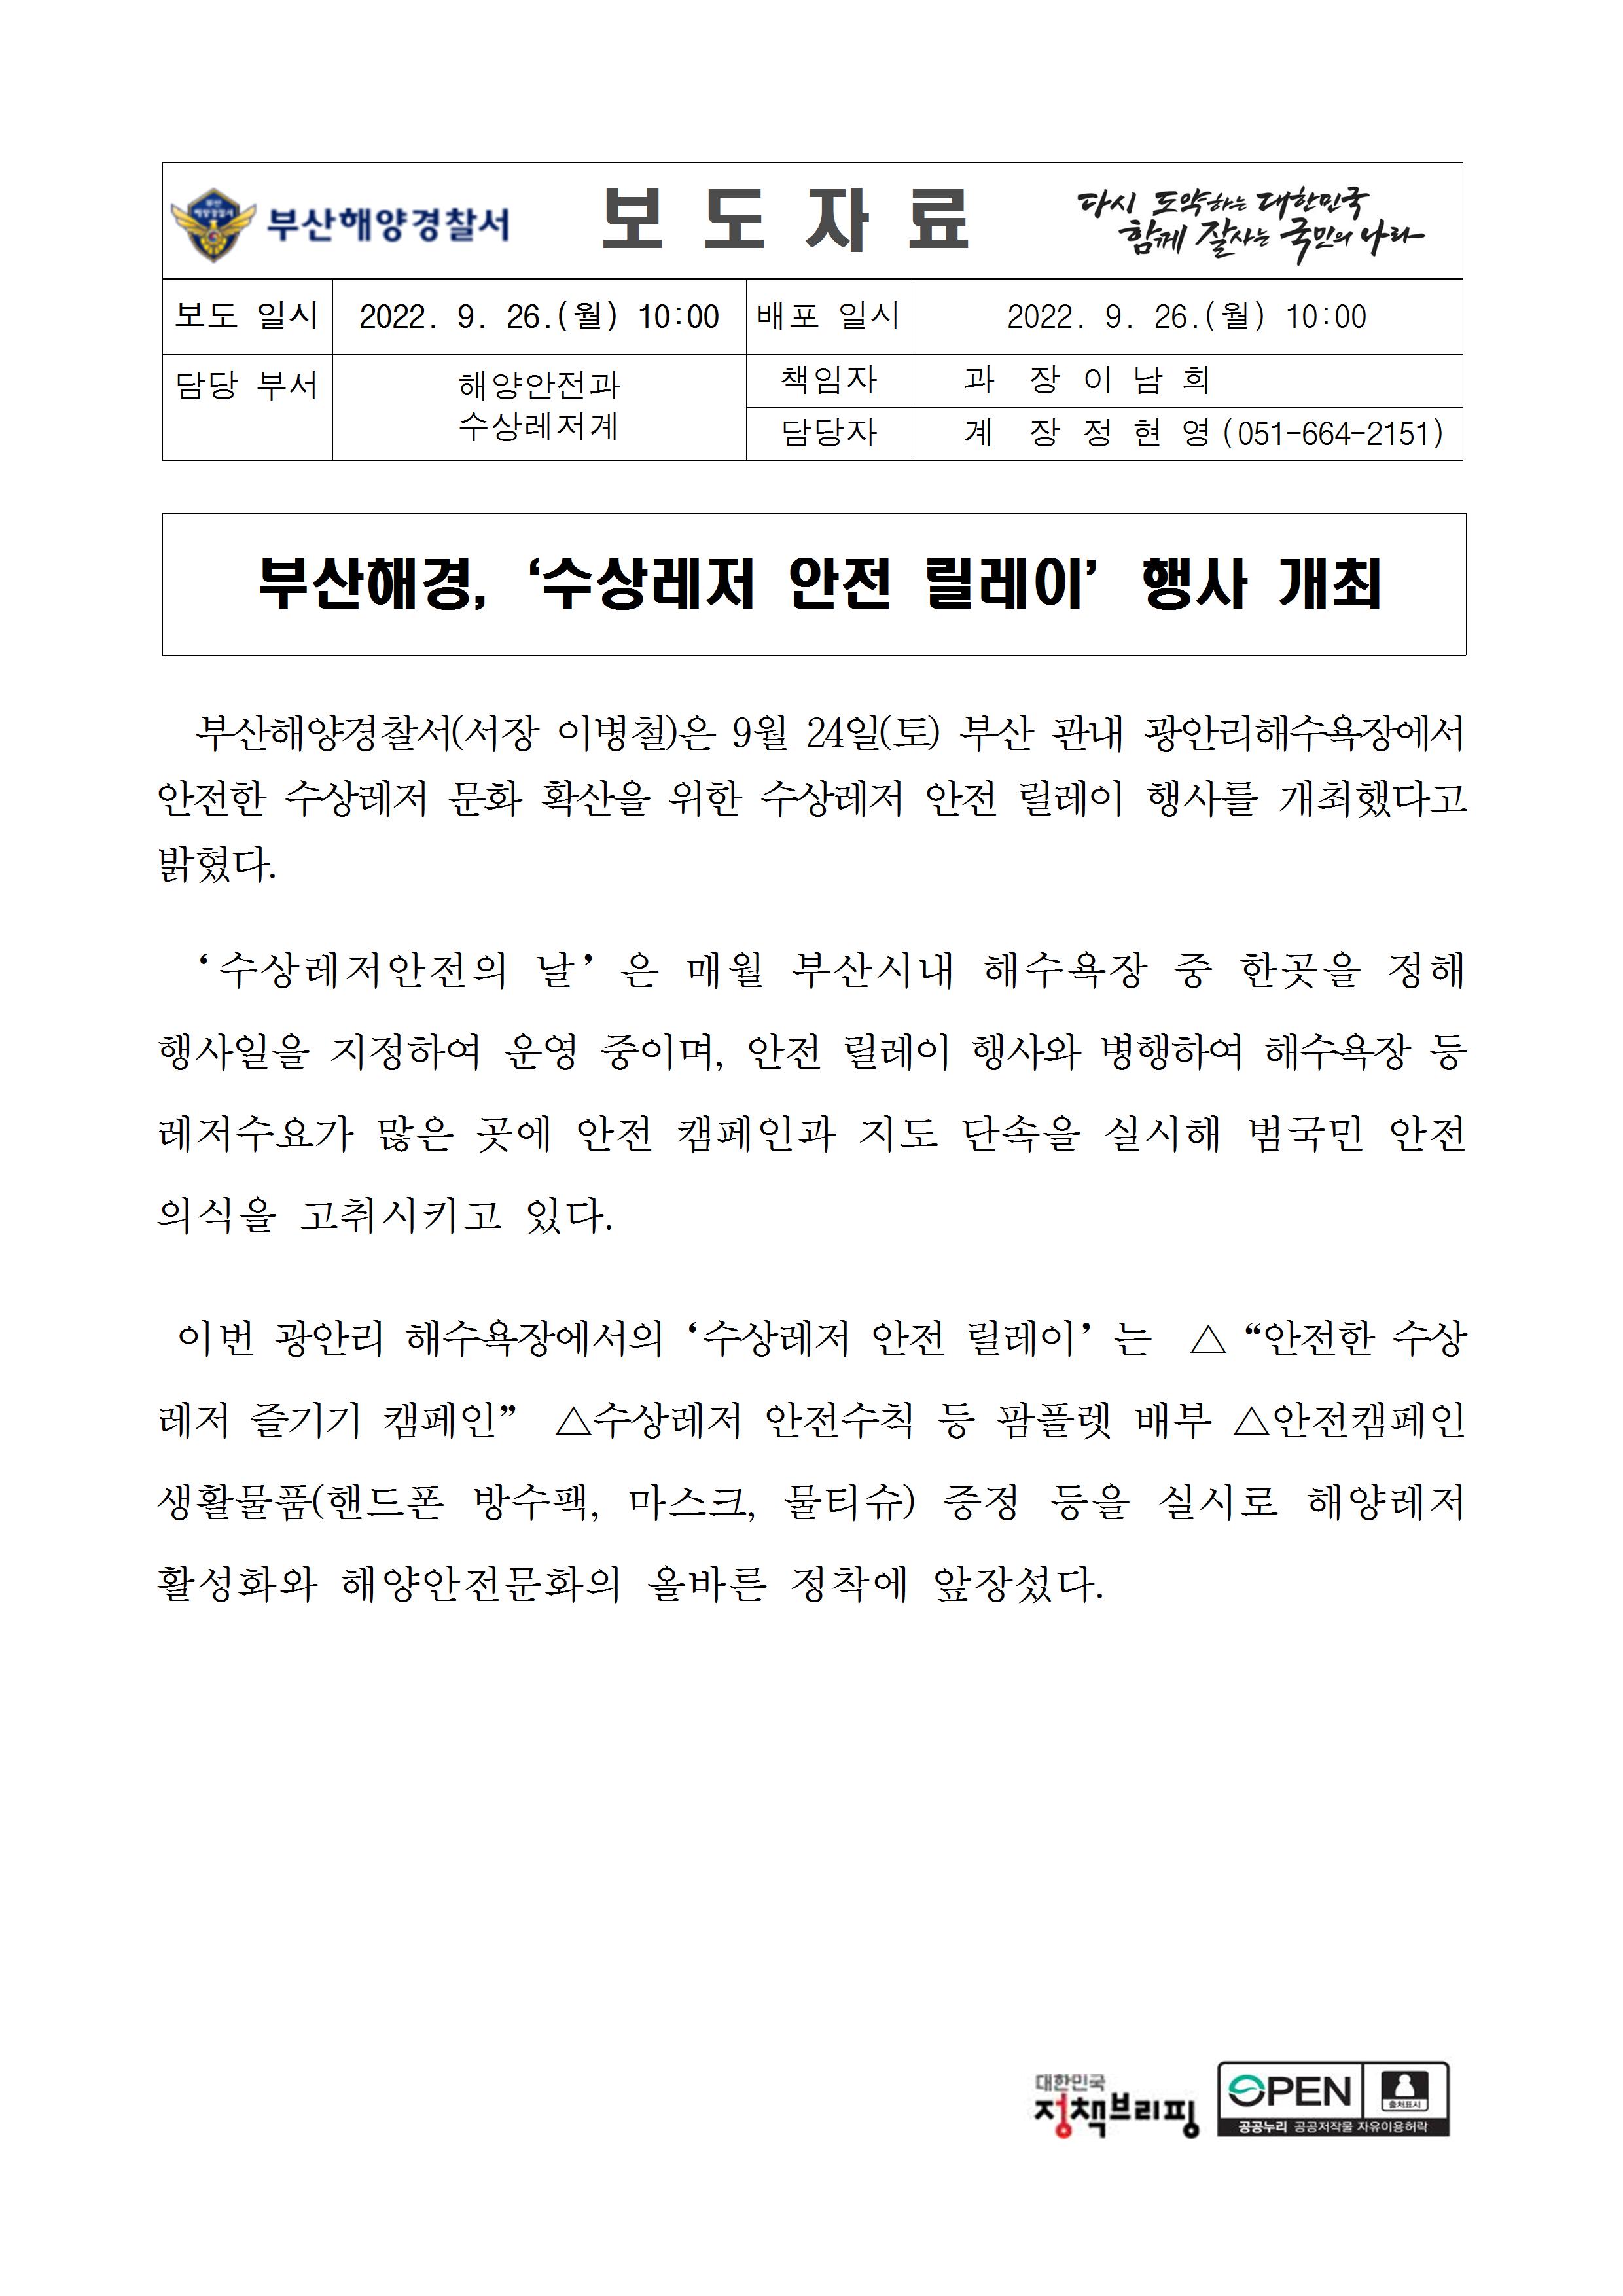 220926_부산해경,‘수상레저 안전 릴레이’행사 개최